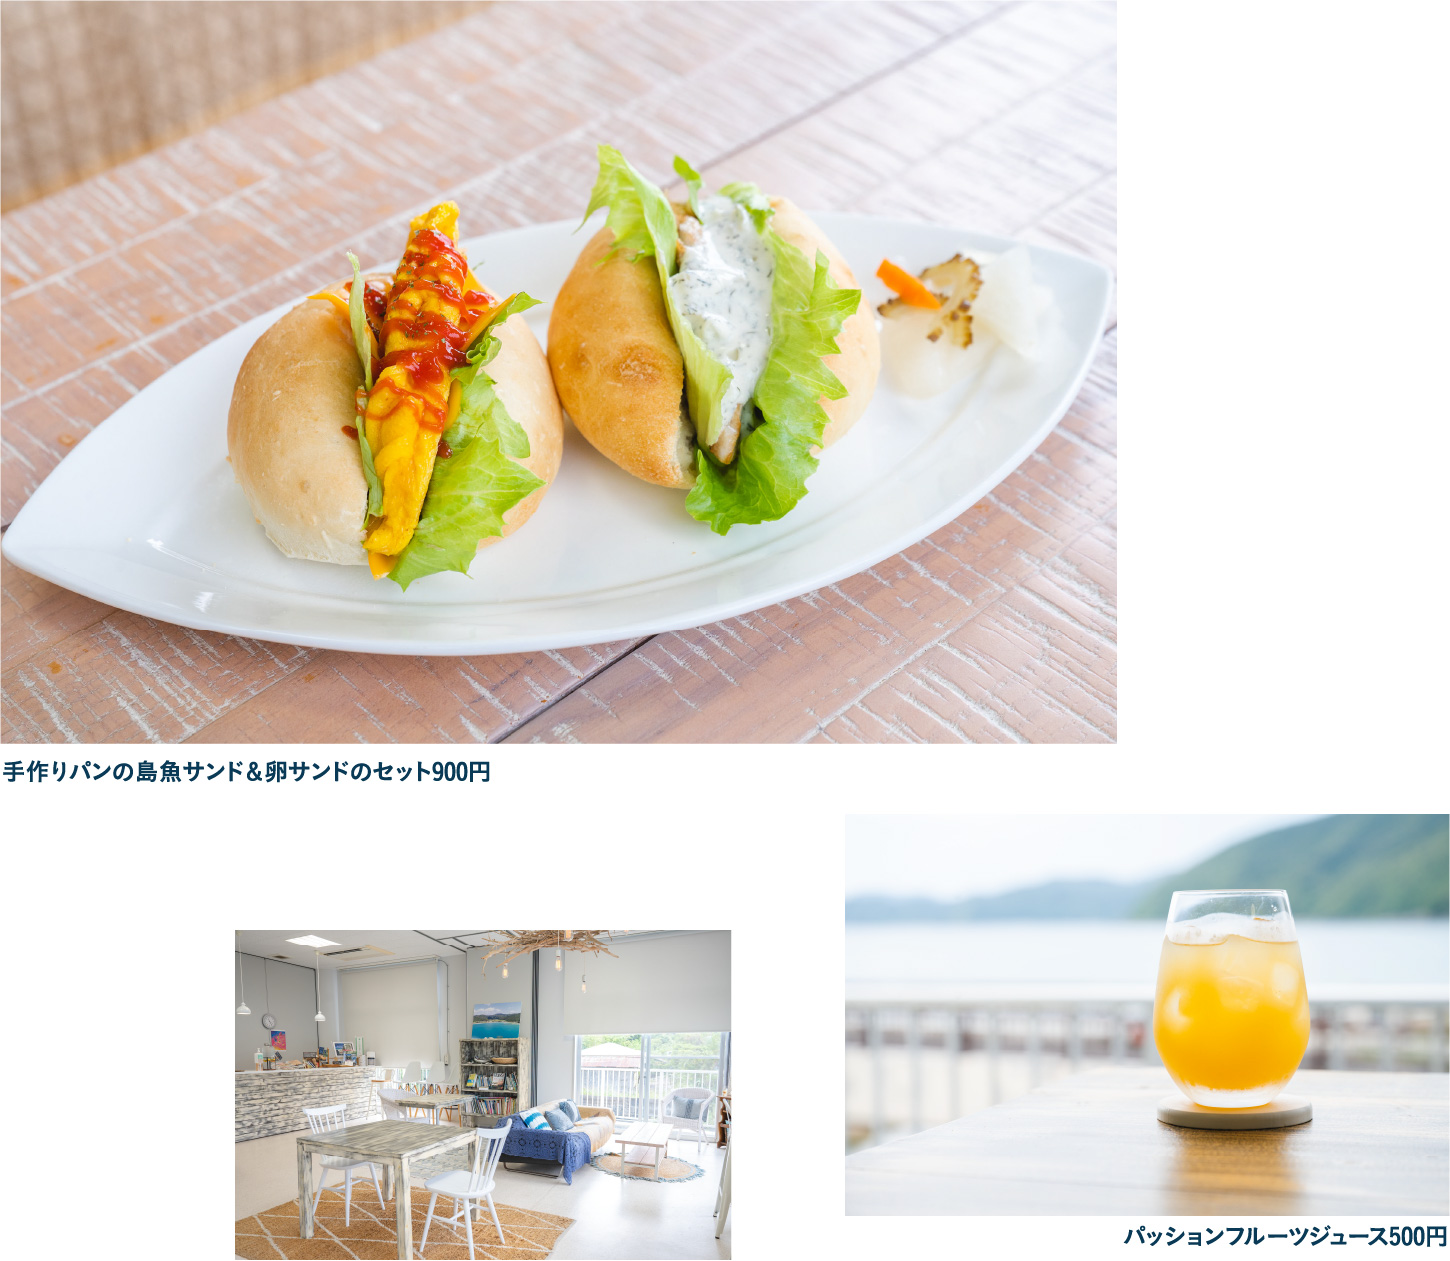 加計呂麻島展示・体験交流館で学び かけろまカフェで軽食を